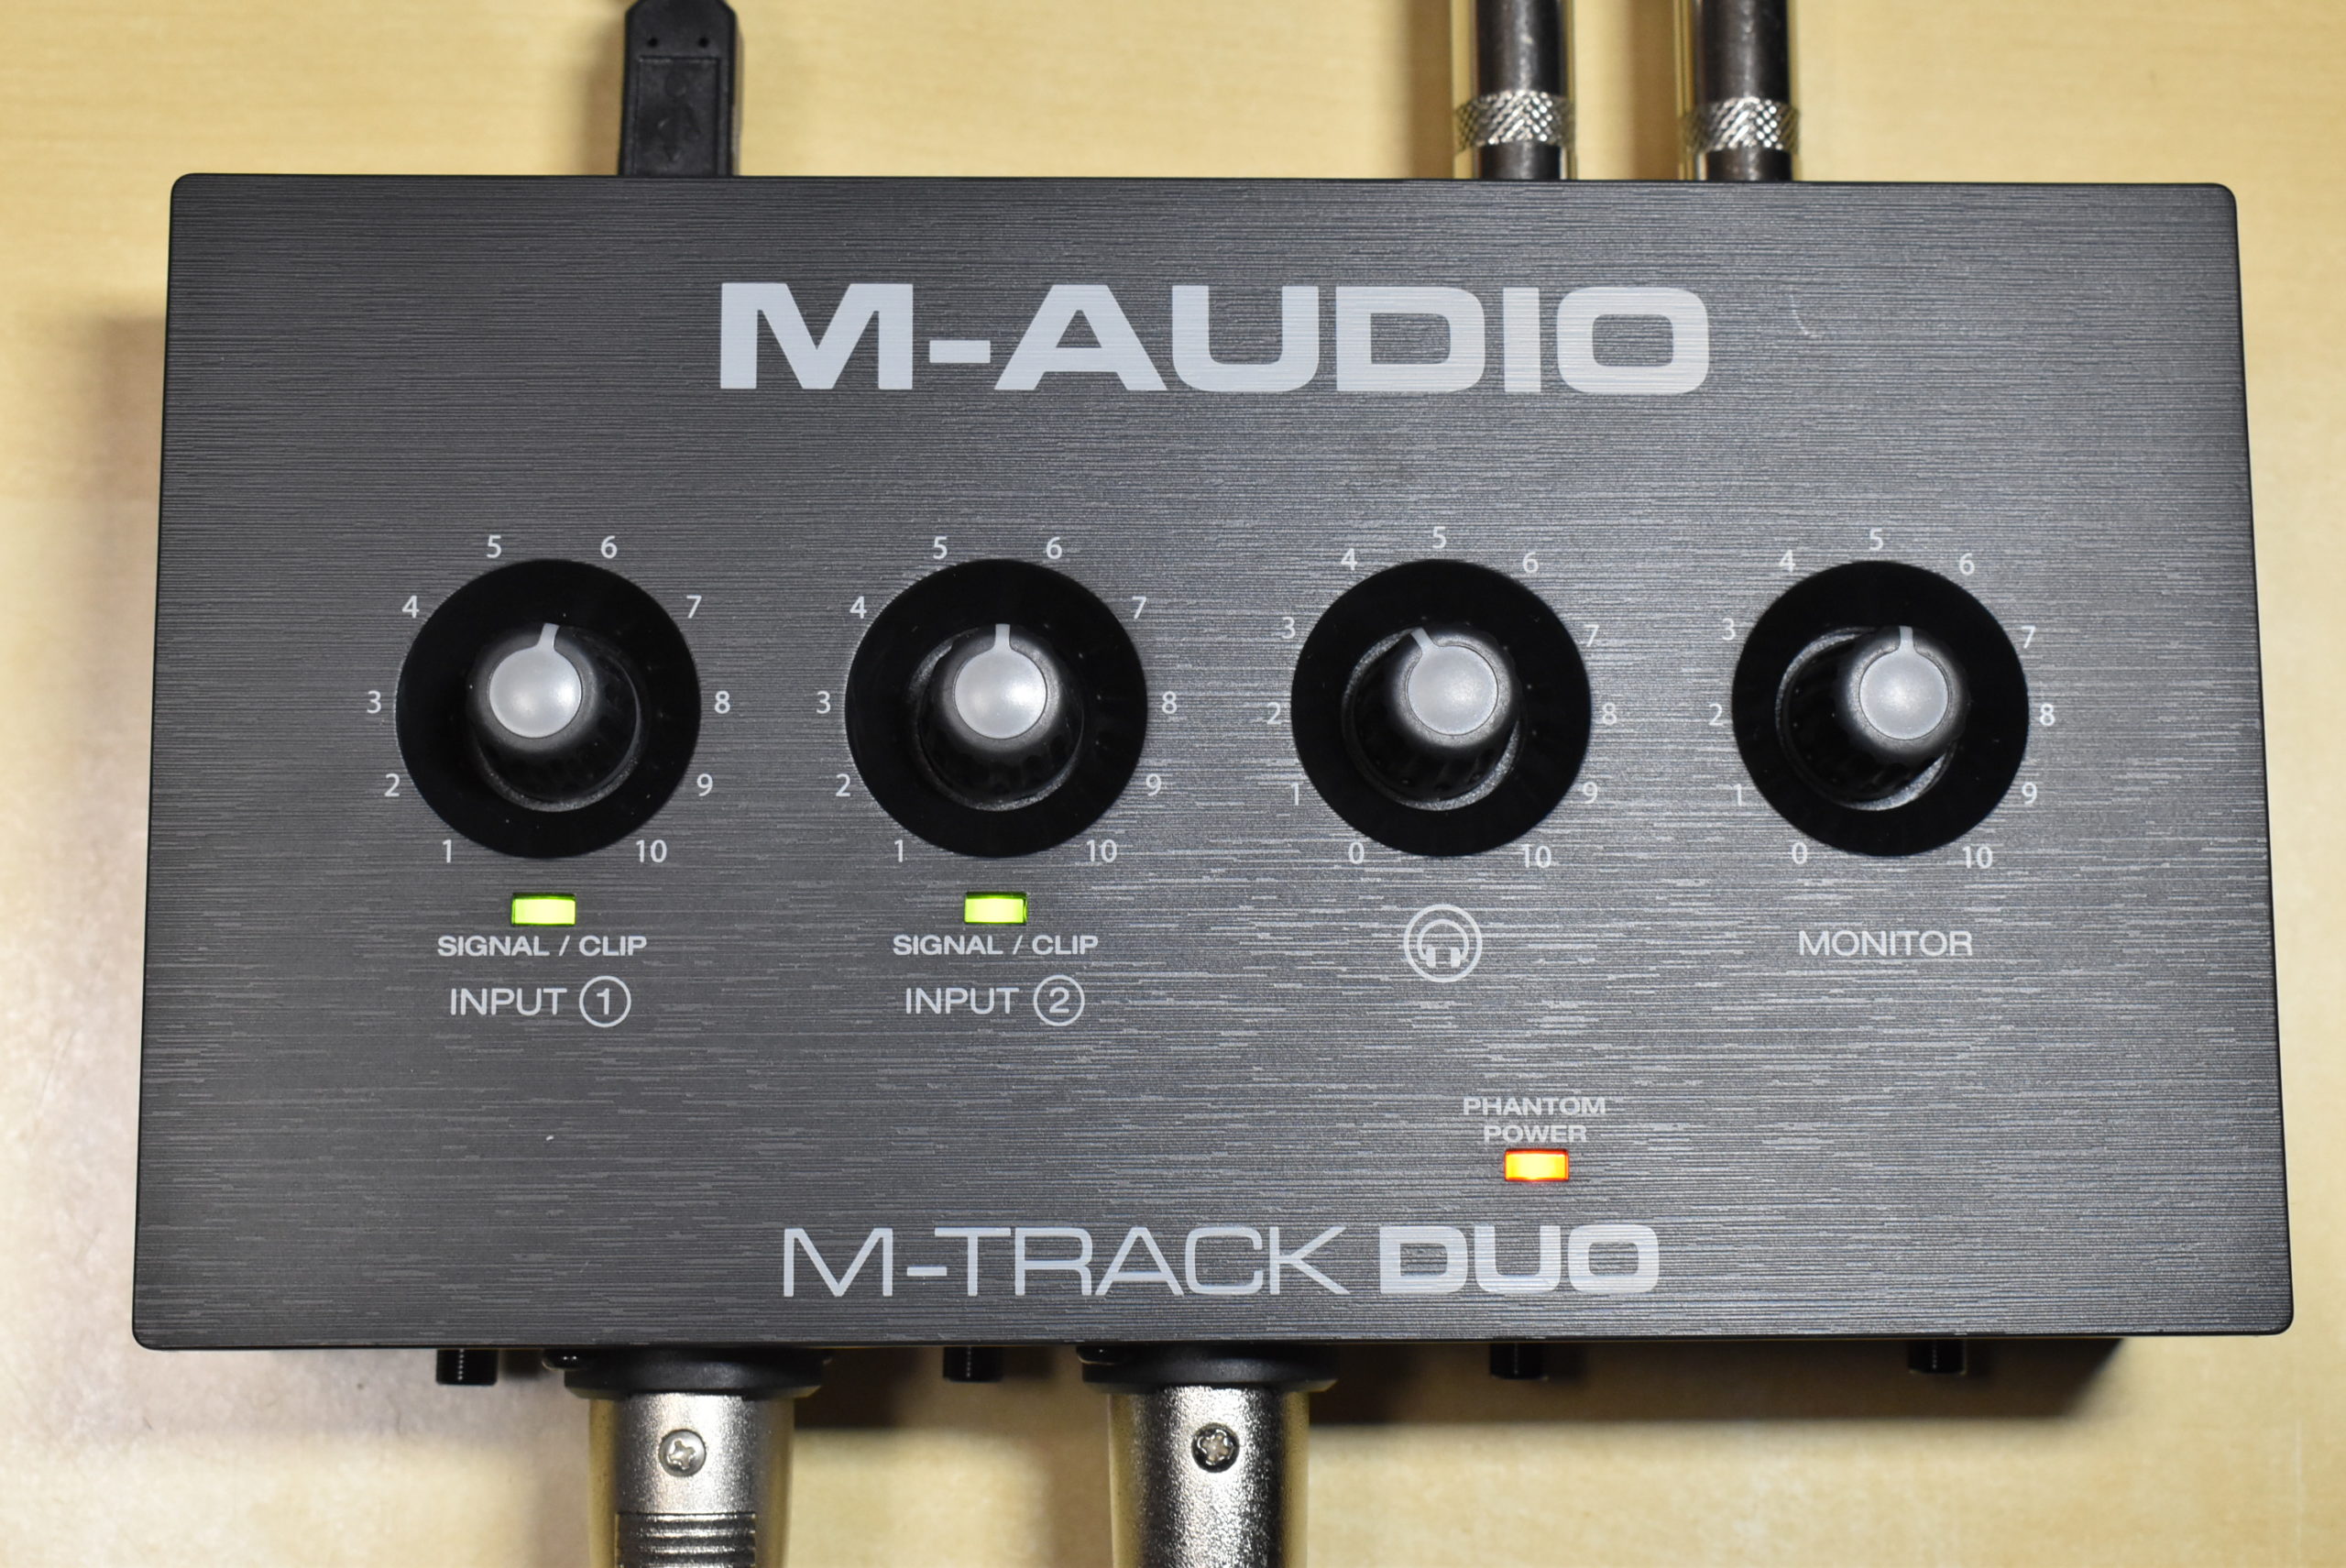 M-Audioの激安オーディオインターフェイス、5,000円のM-Track Solo 